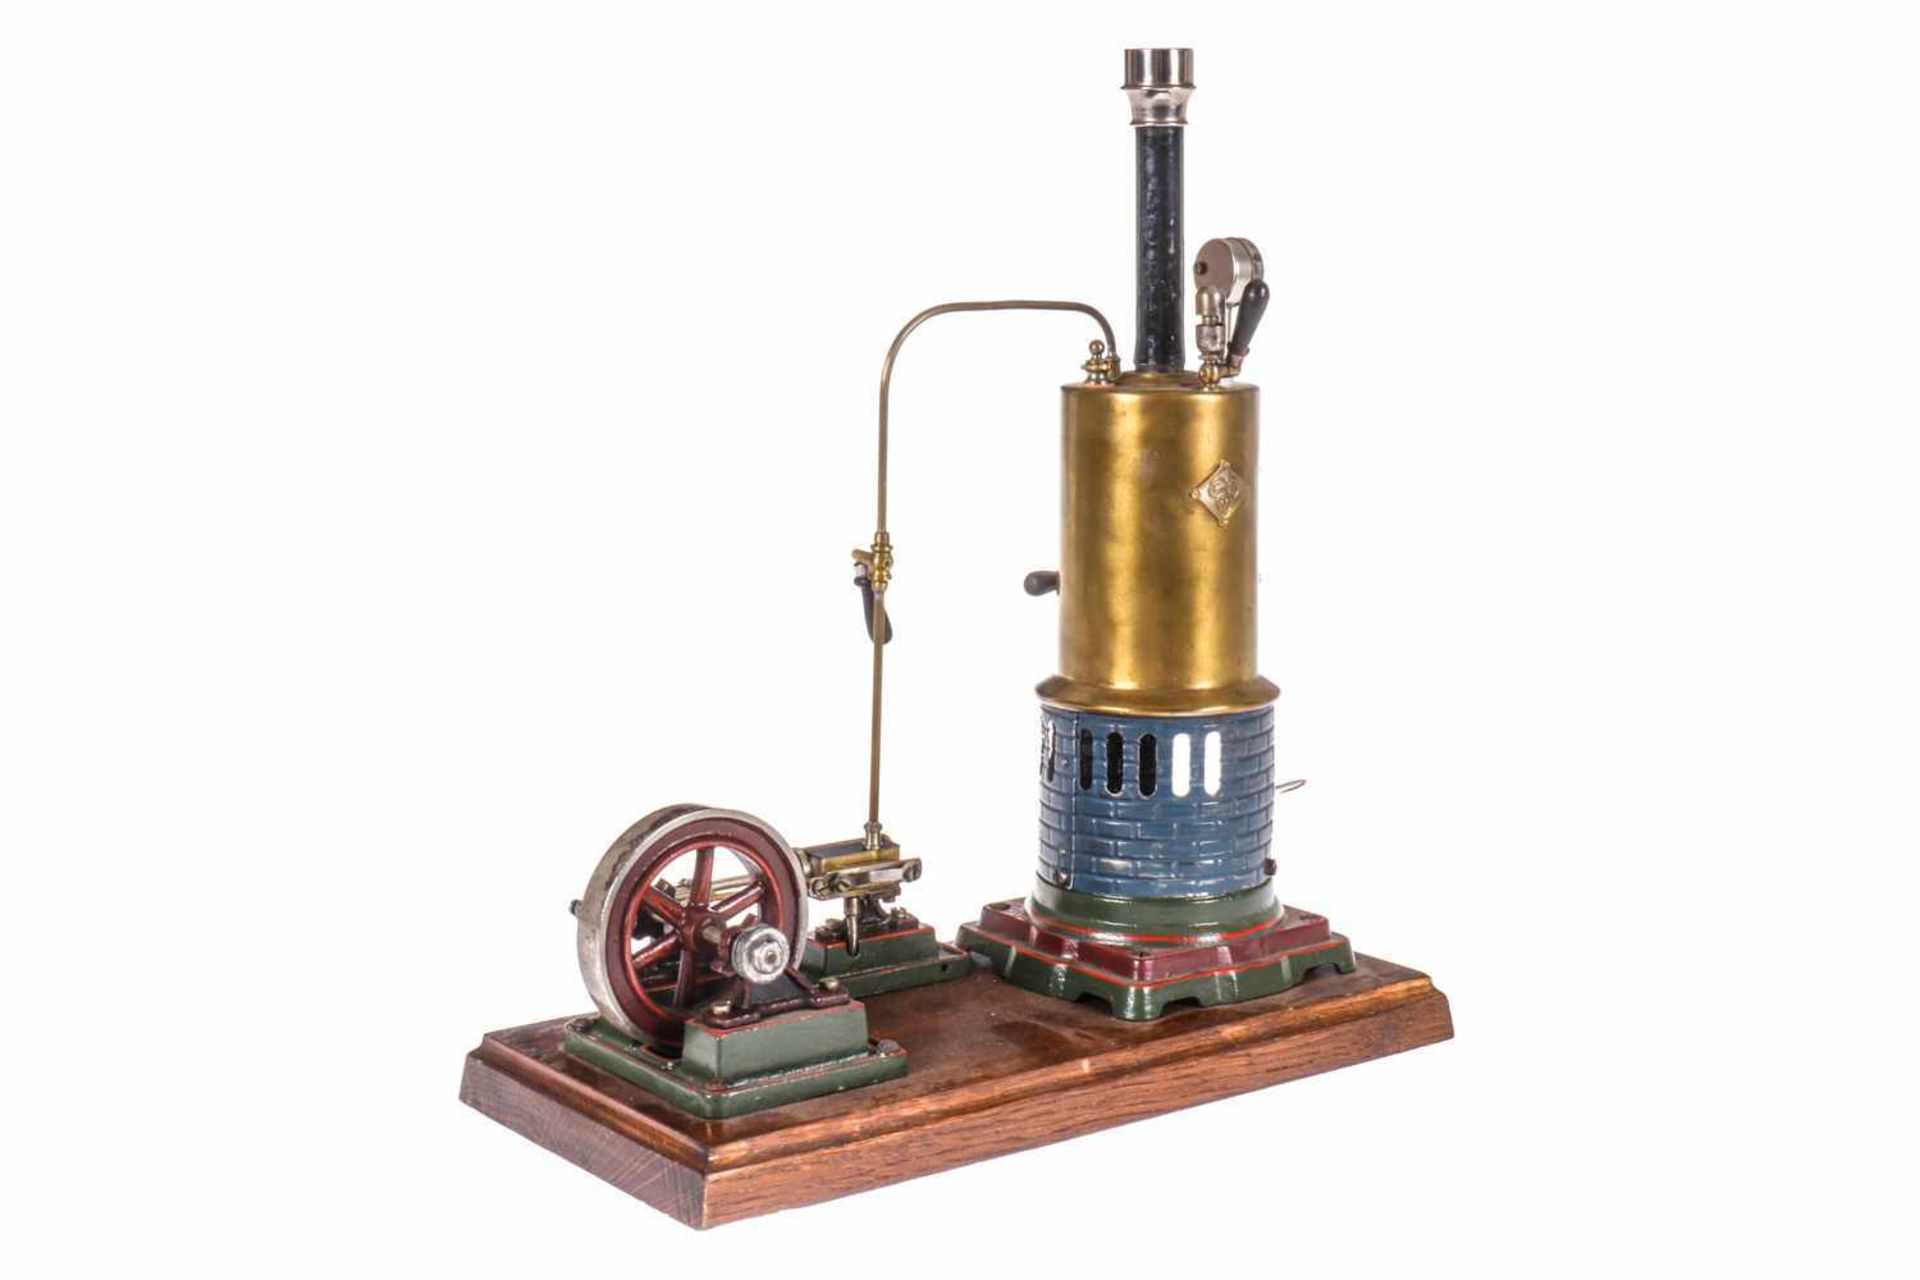 Bing Dampfmaschine, stehender Kessel, KD 6, mit Armaturen, Manometer und NB-Brenner, feststehender